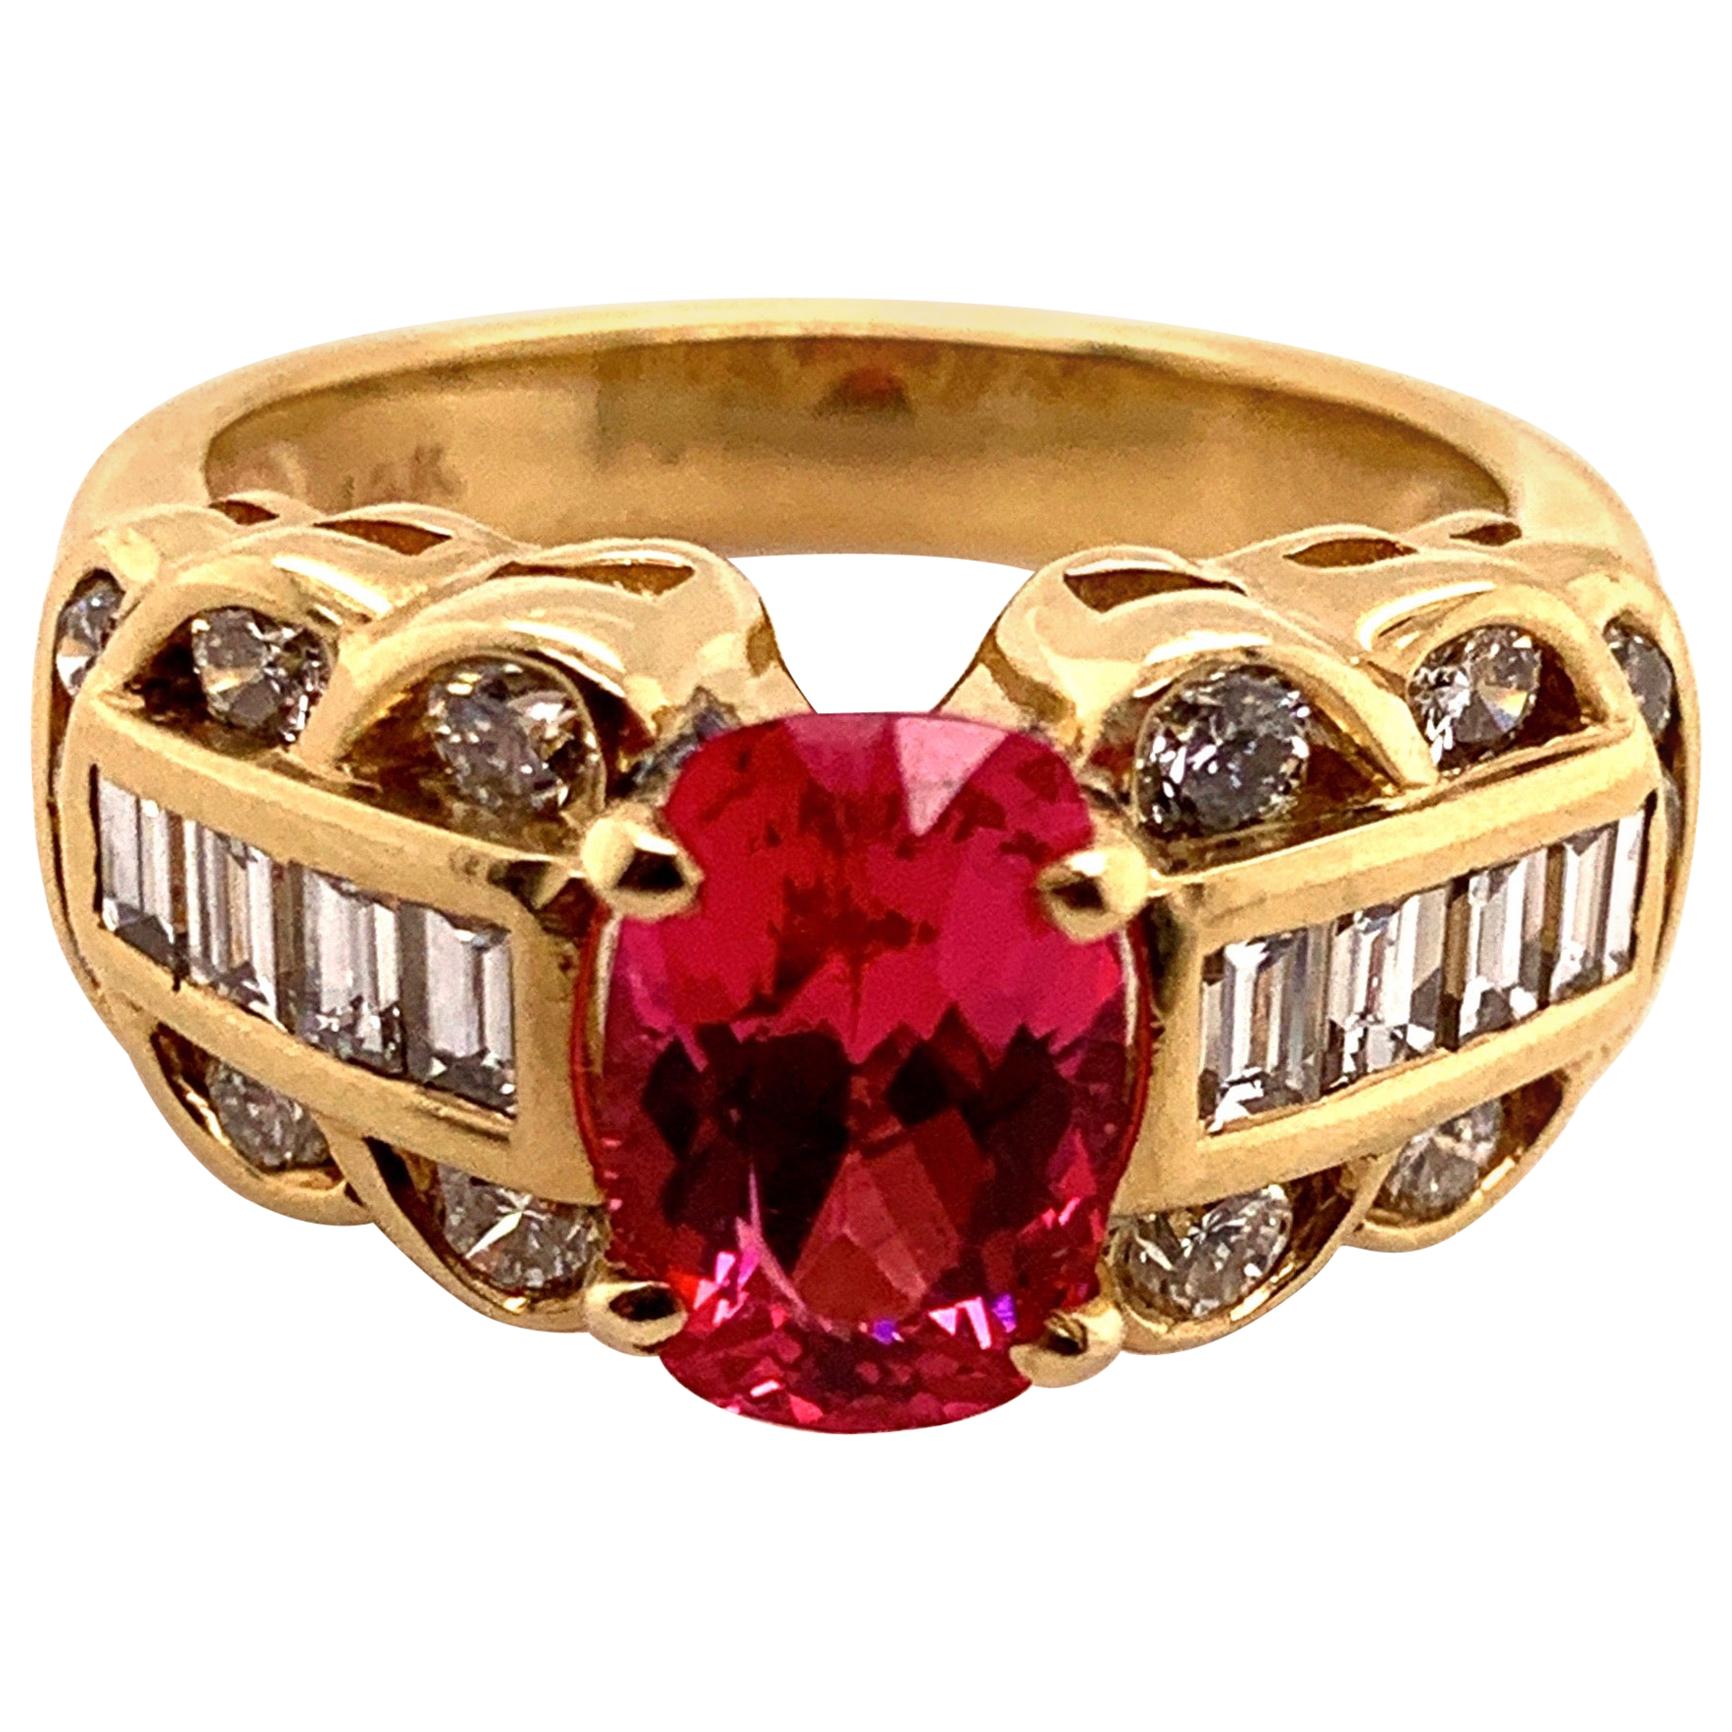 Bague en or avec spinelle rose rougeâtre de 1,85 carat et diamants